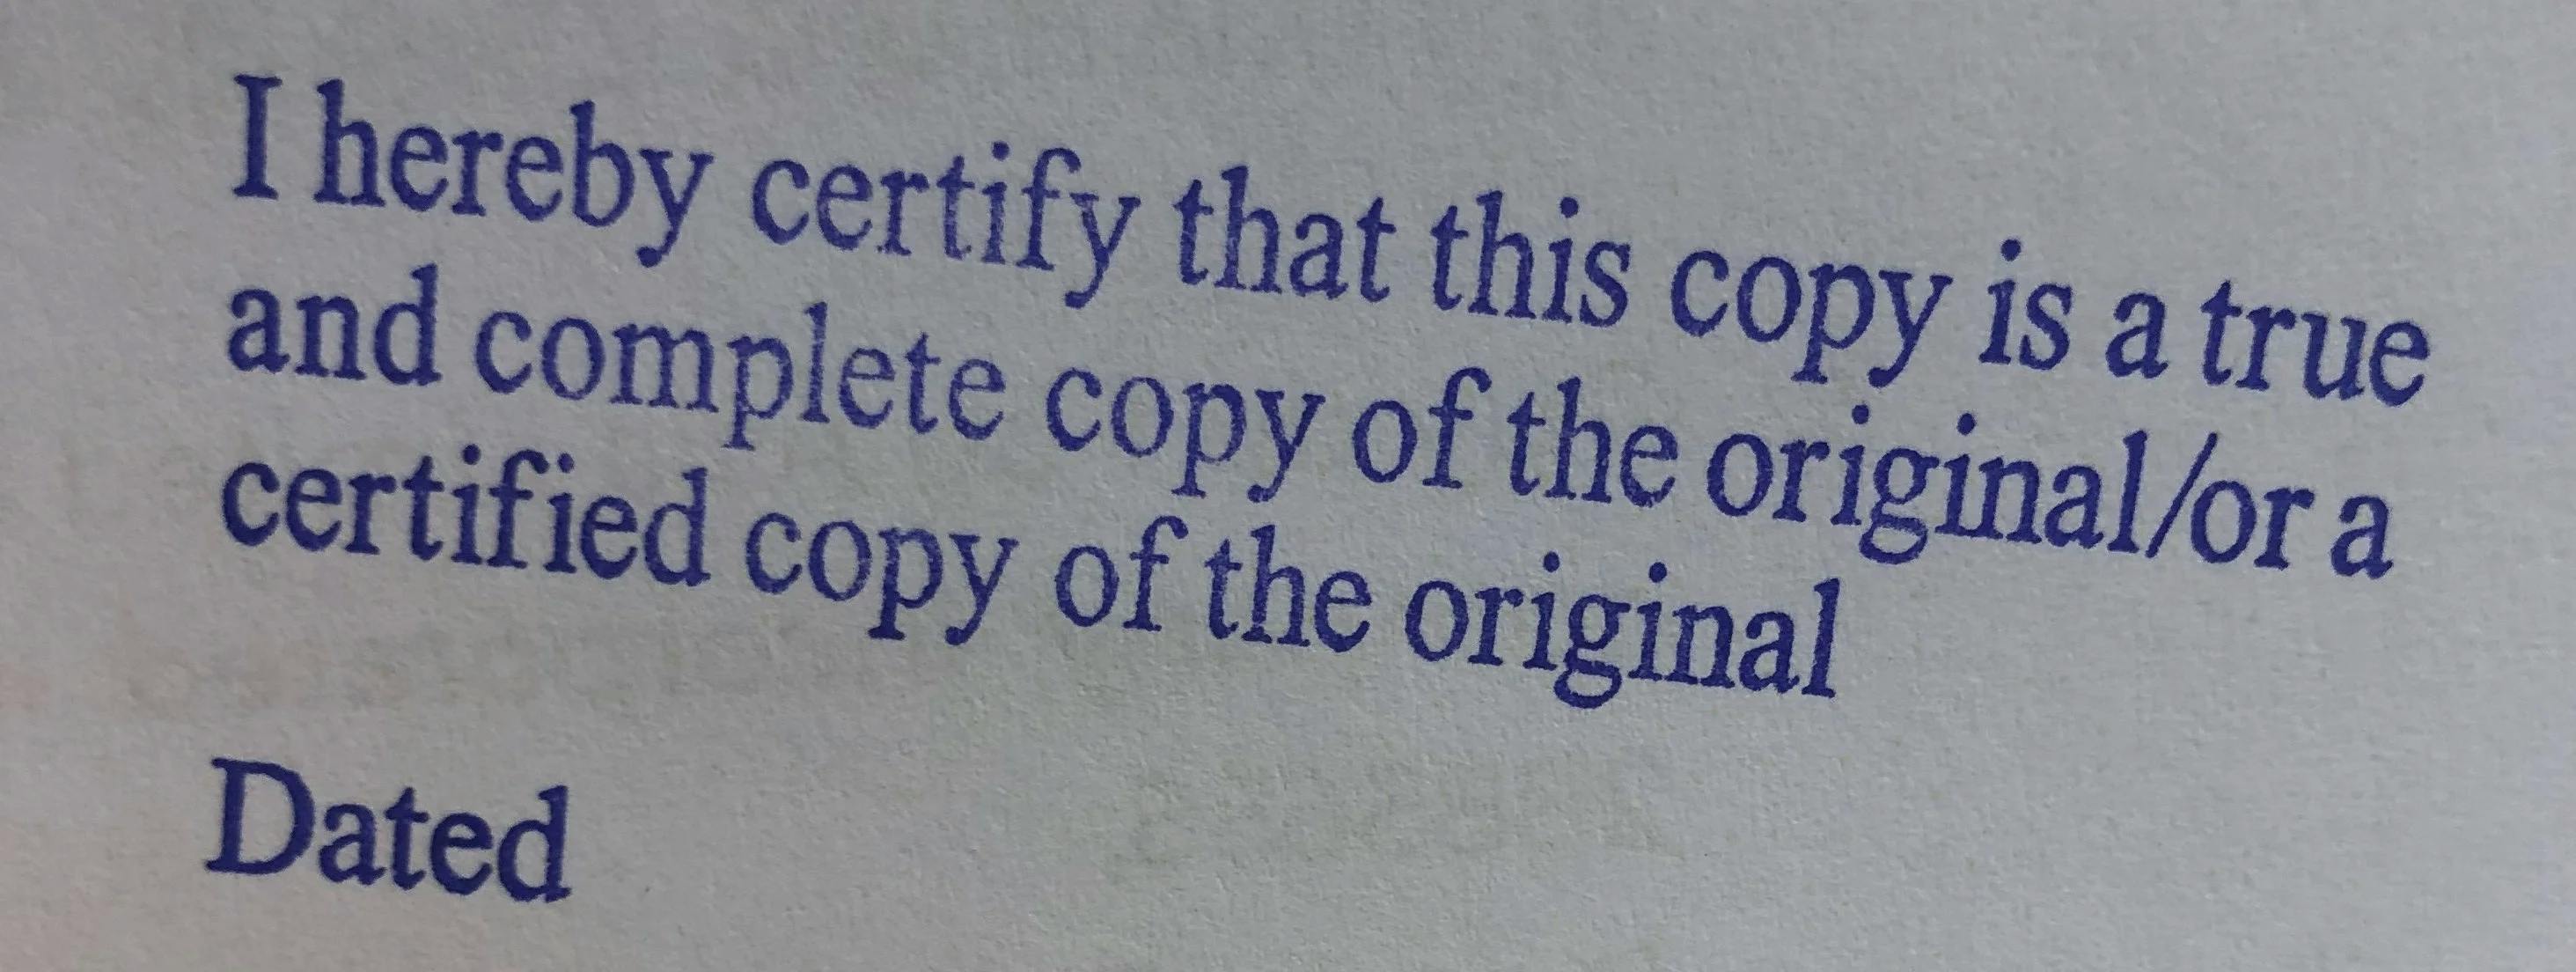 How to verify a certified true copy document.